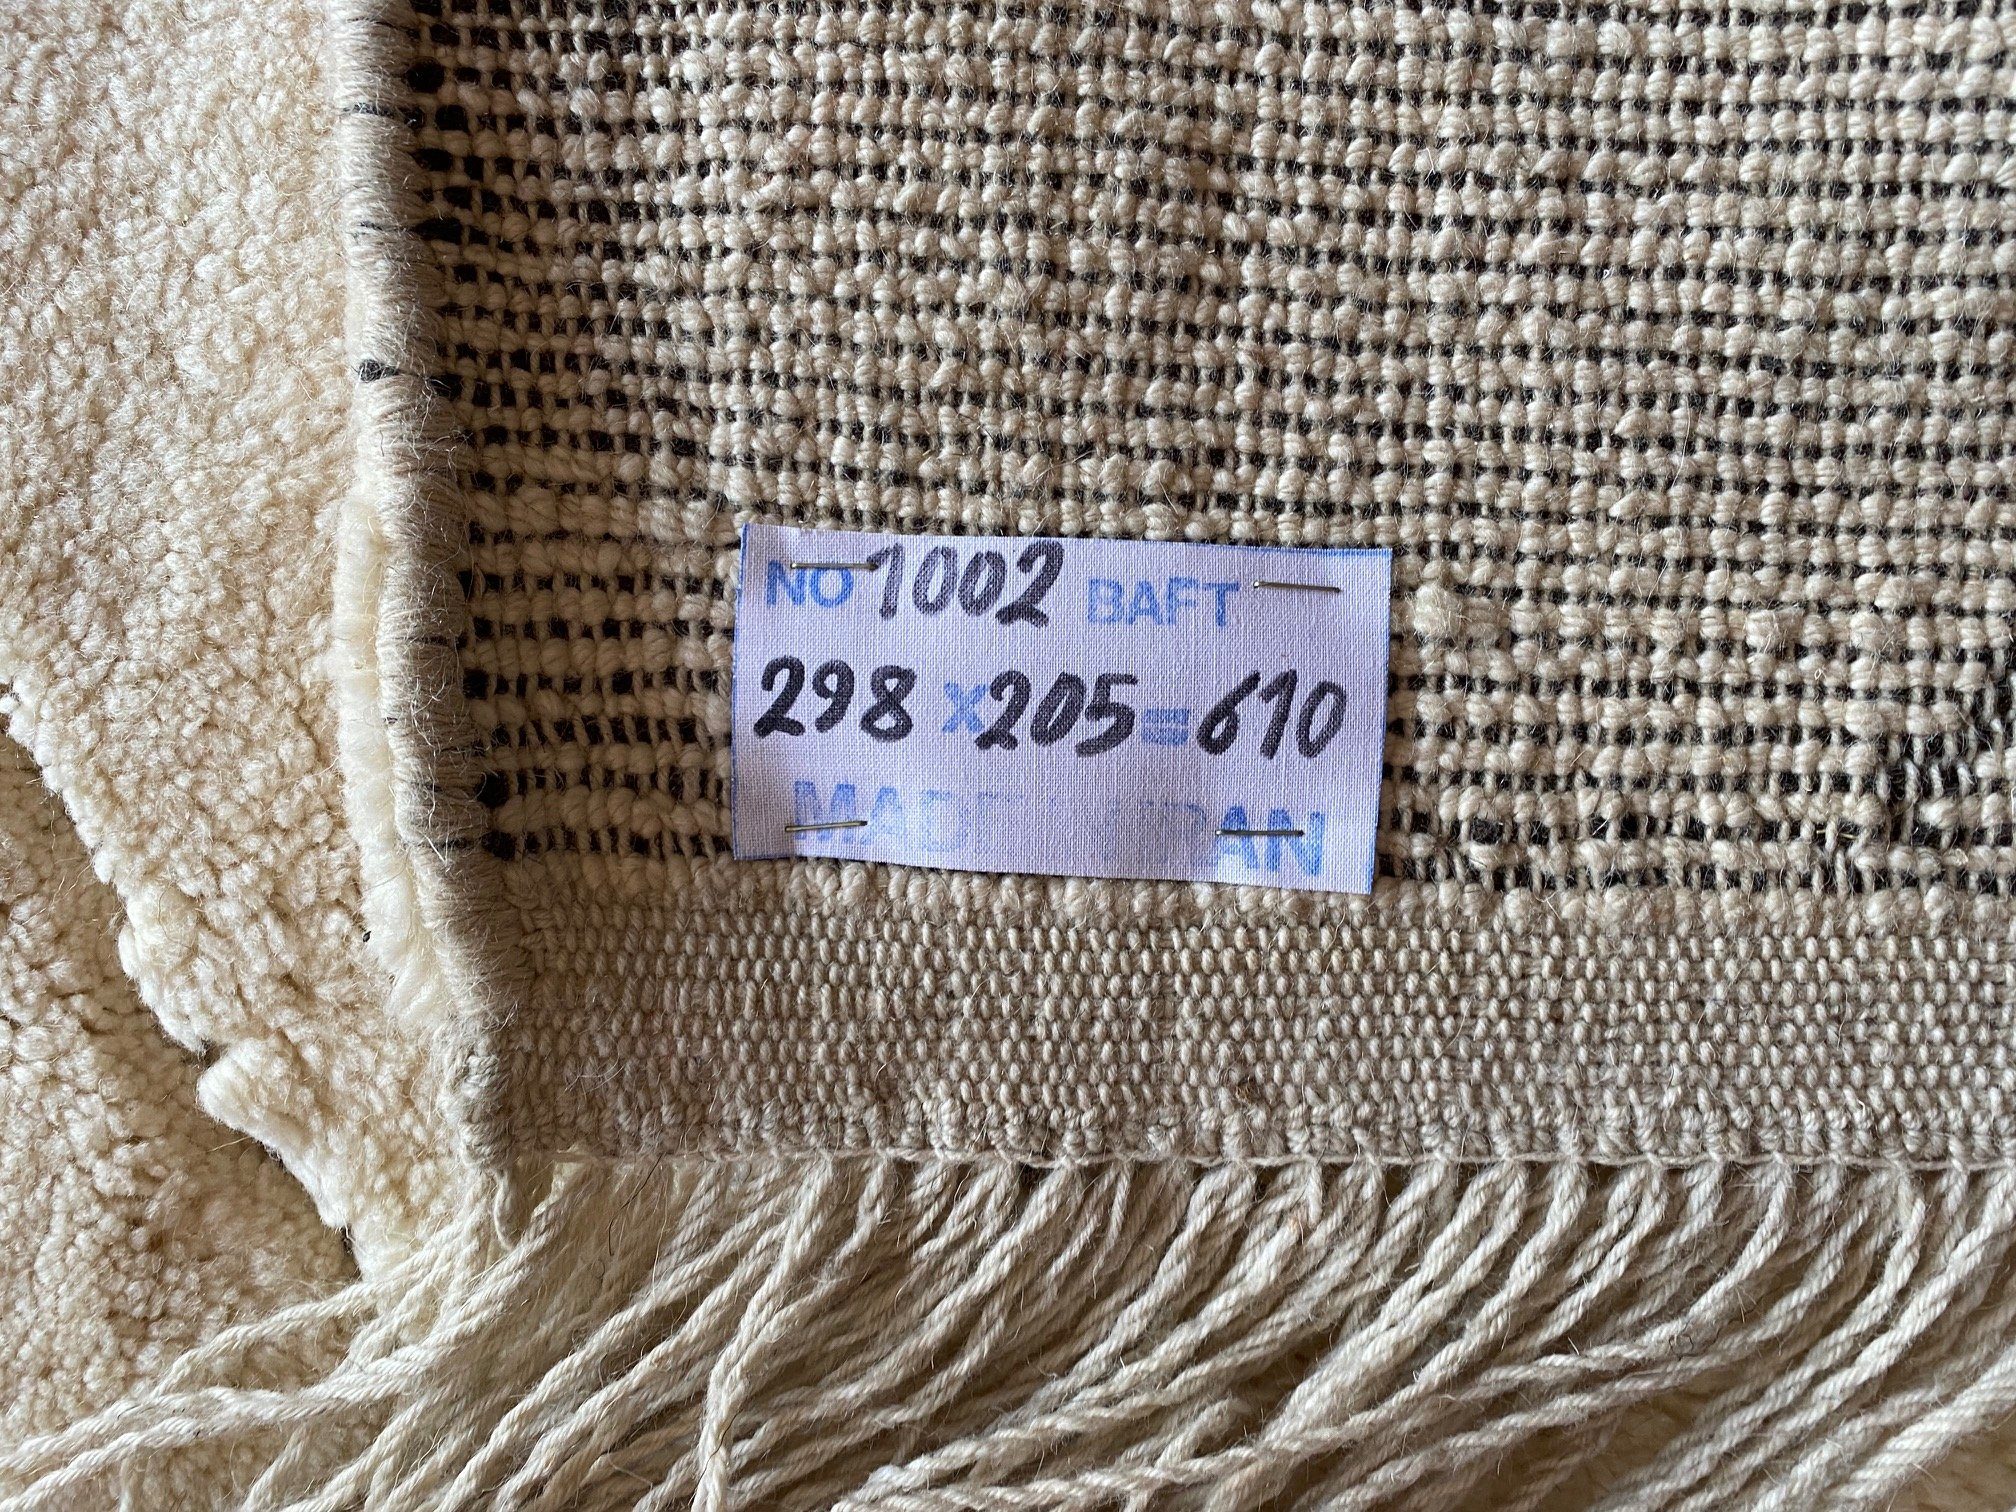 Hochflor-Teppich Perser Gabbeh im Handgeknüpft Handgeknüpft Teppich Berber Persien Morgenlandbazar, 298x205